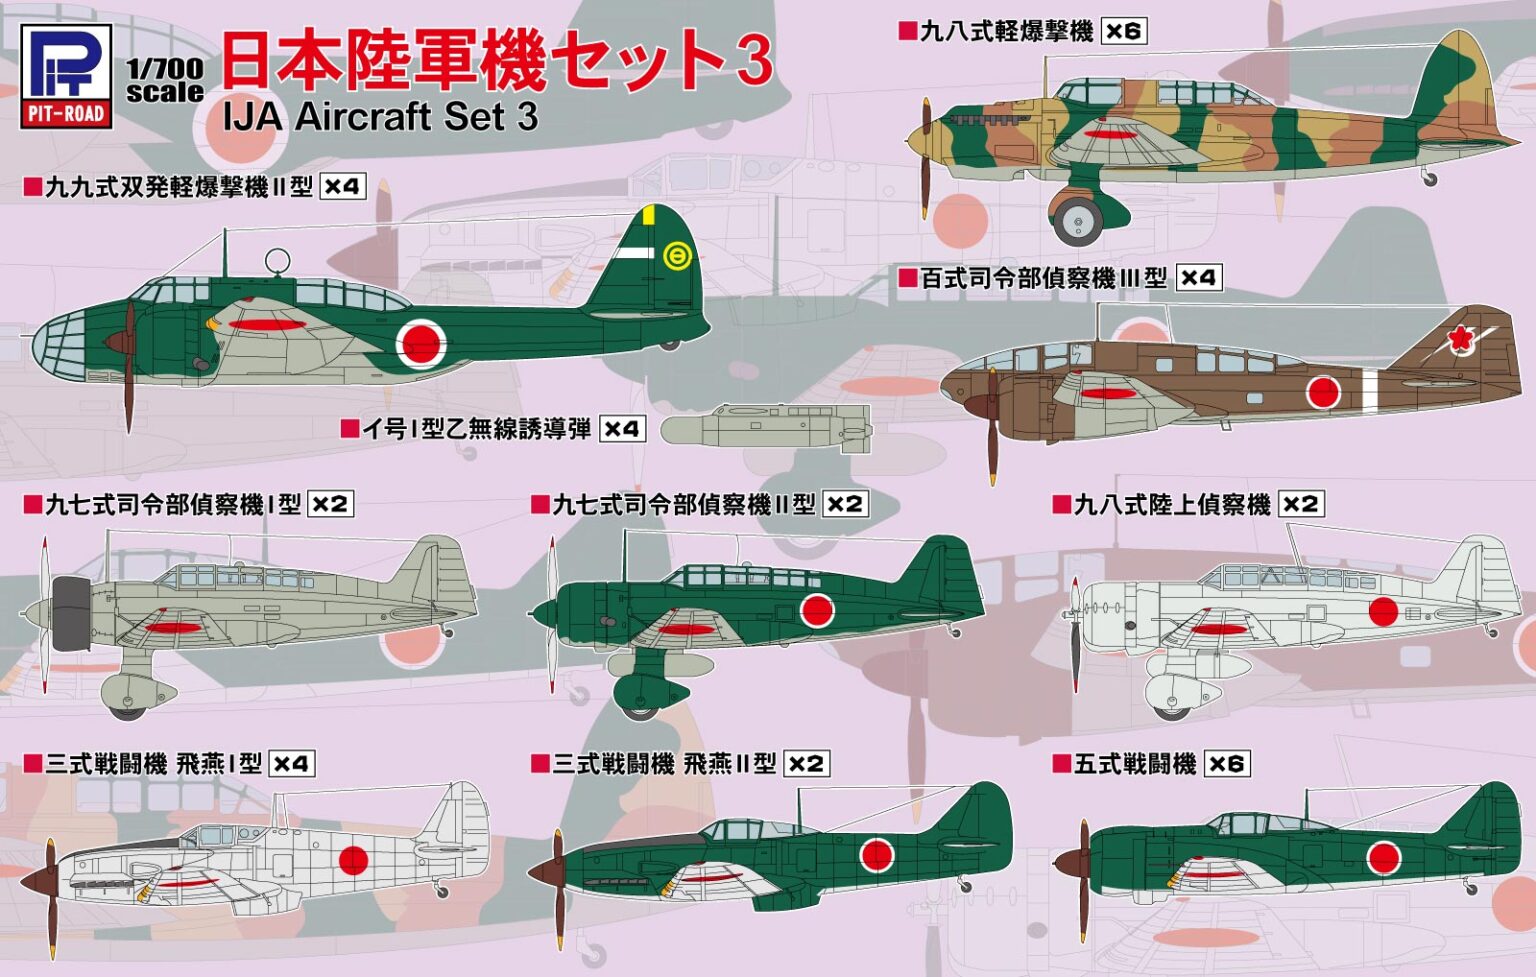 1/700　日本陸軍機セット 3 【飛燕I型×4、飛燕II型×2、五式戦闘機×6、百式司偵III型×4、九八式陸偵×2、 九七式